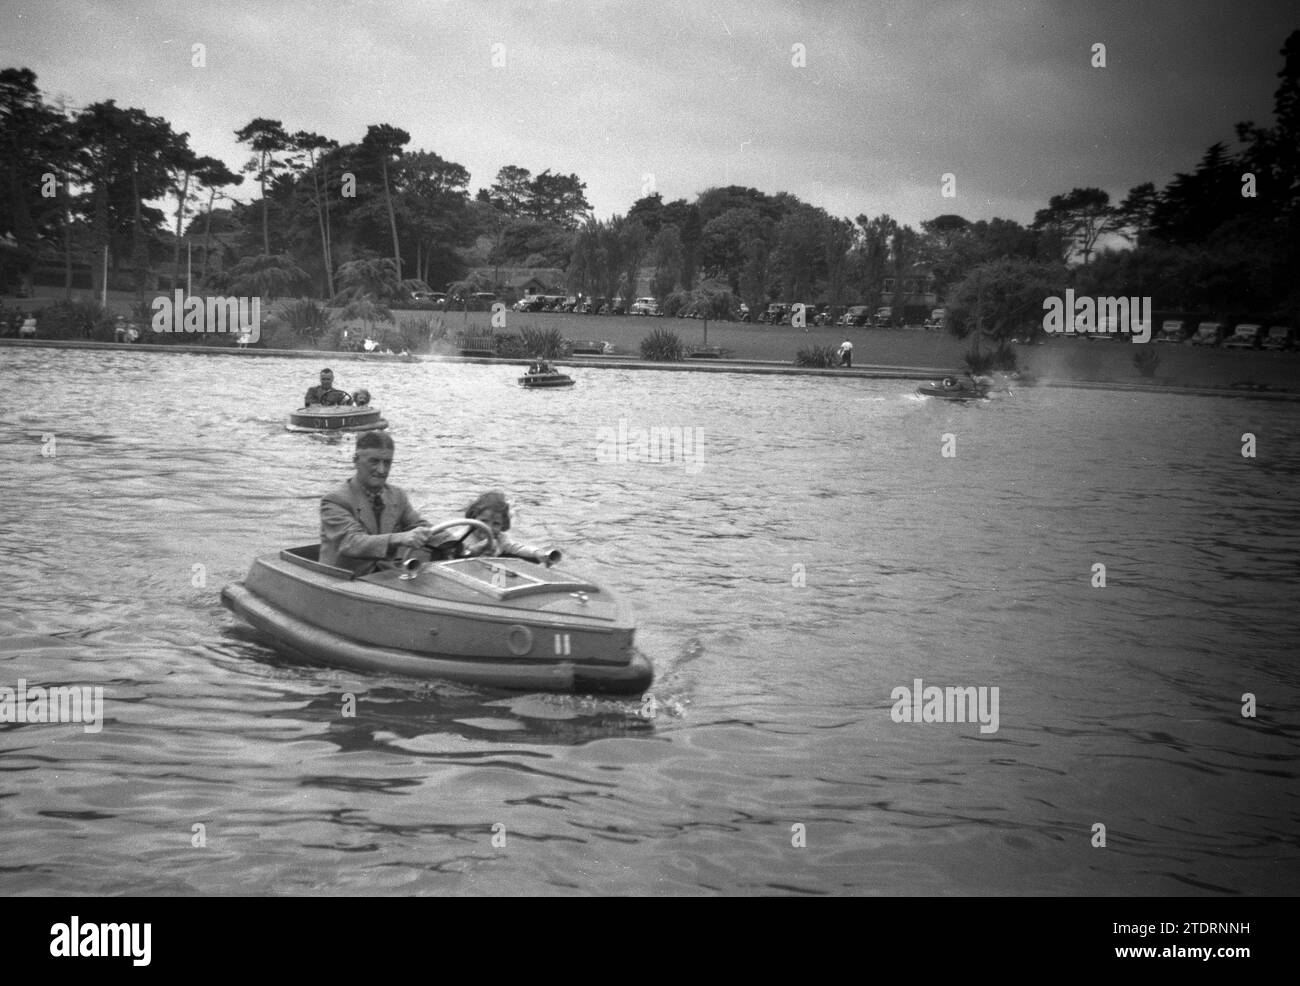 Années 1950, historique, un grand-père avec sa petite-fille ensemble dans un petit bateau à moteur à deux places avec une garniture de protection en caoutchouc, sur l'eau d'un grand lac de navigation, Angleterre, Royaume-Uni. Au loin une ligne de voitures de l'époque garées sur l'herbe au bord du lac. Banque D'Images